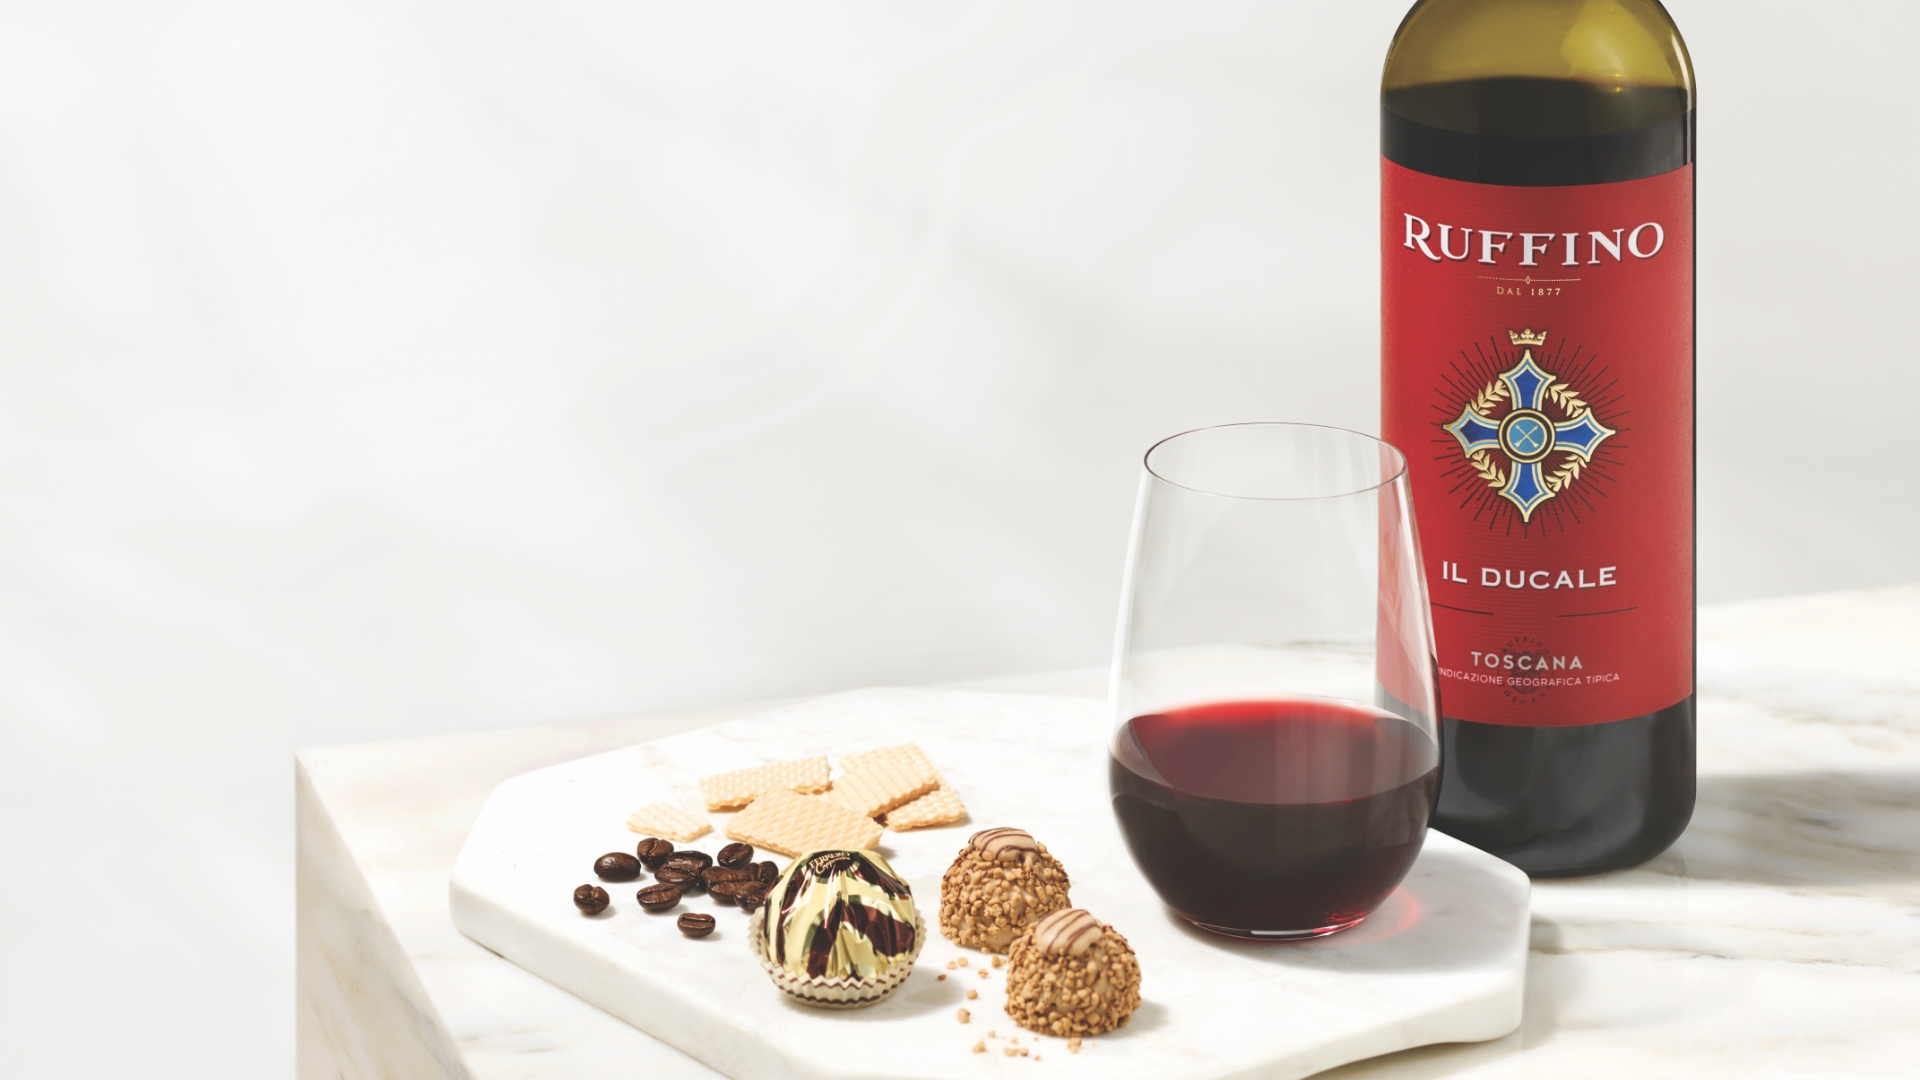 Ruffino wine and Ferrero chocolates